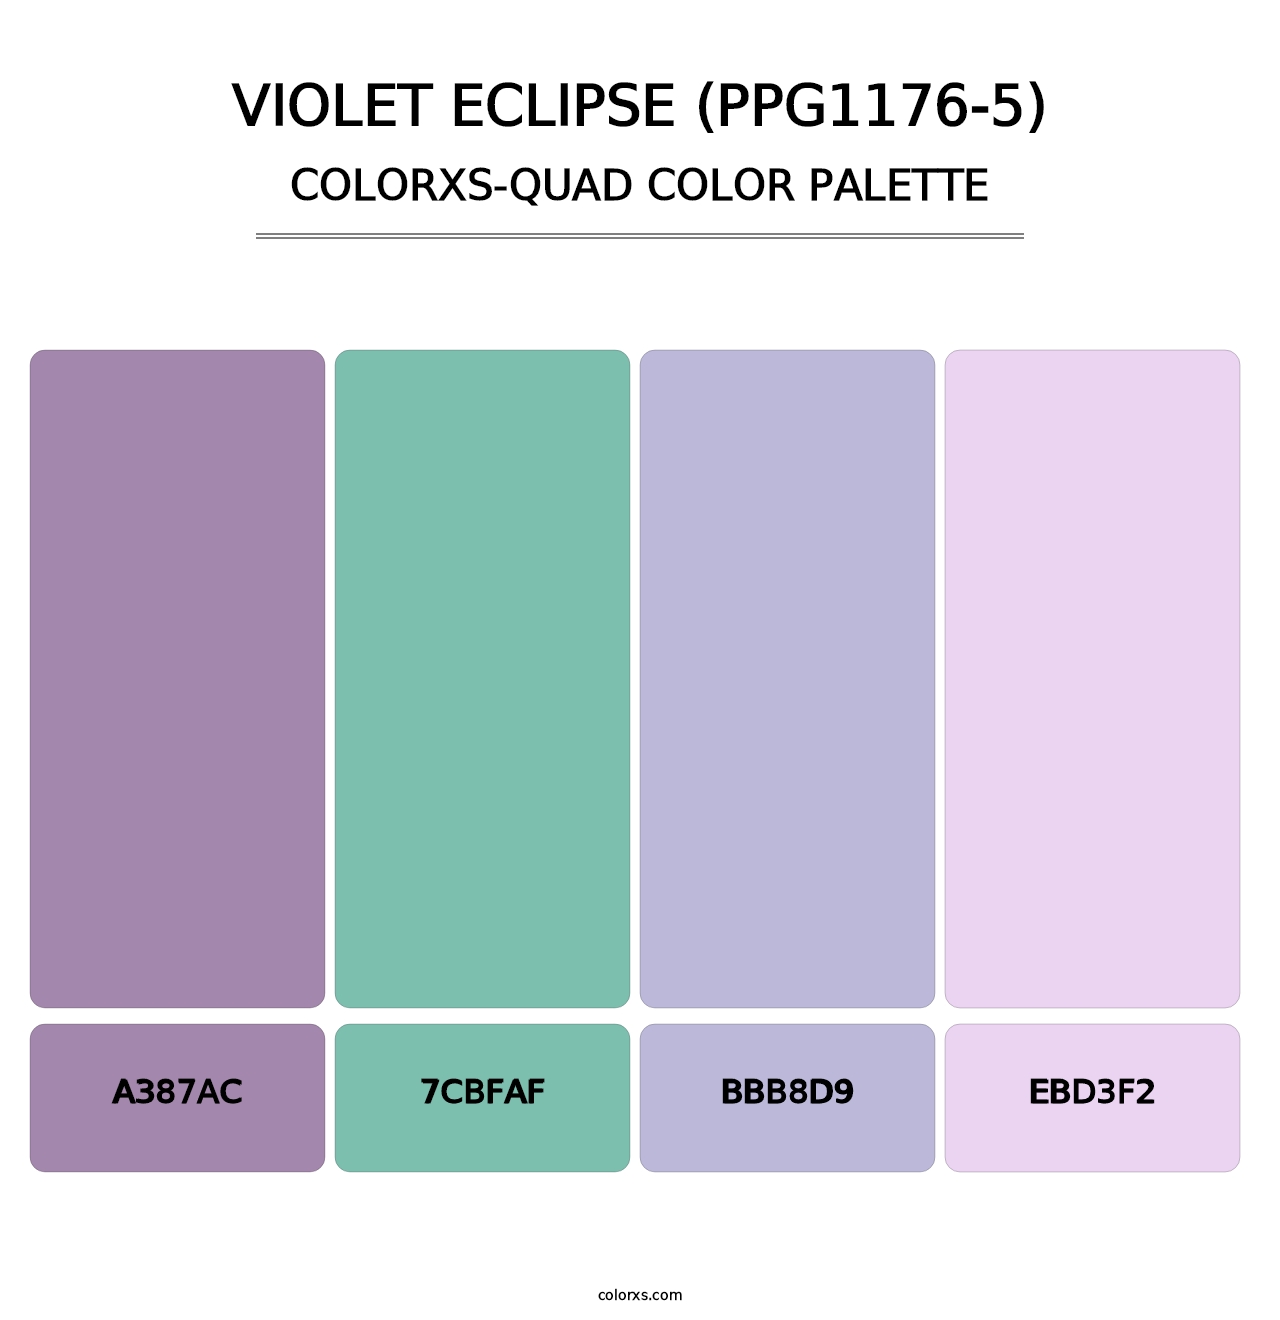 Violet Eclipse (PPG1176-5) - Colorxs Quad Palette